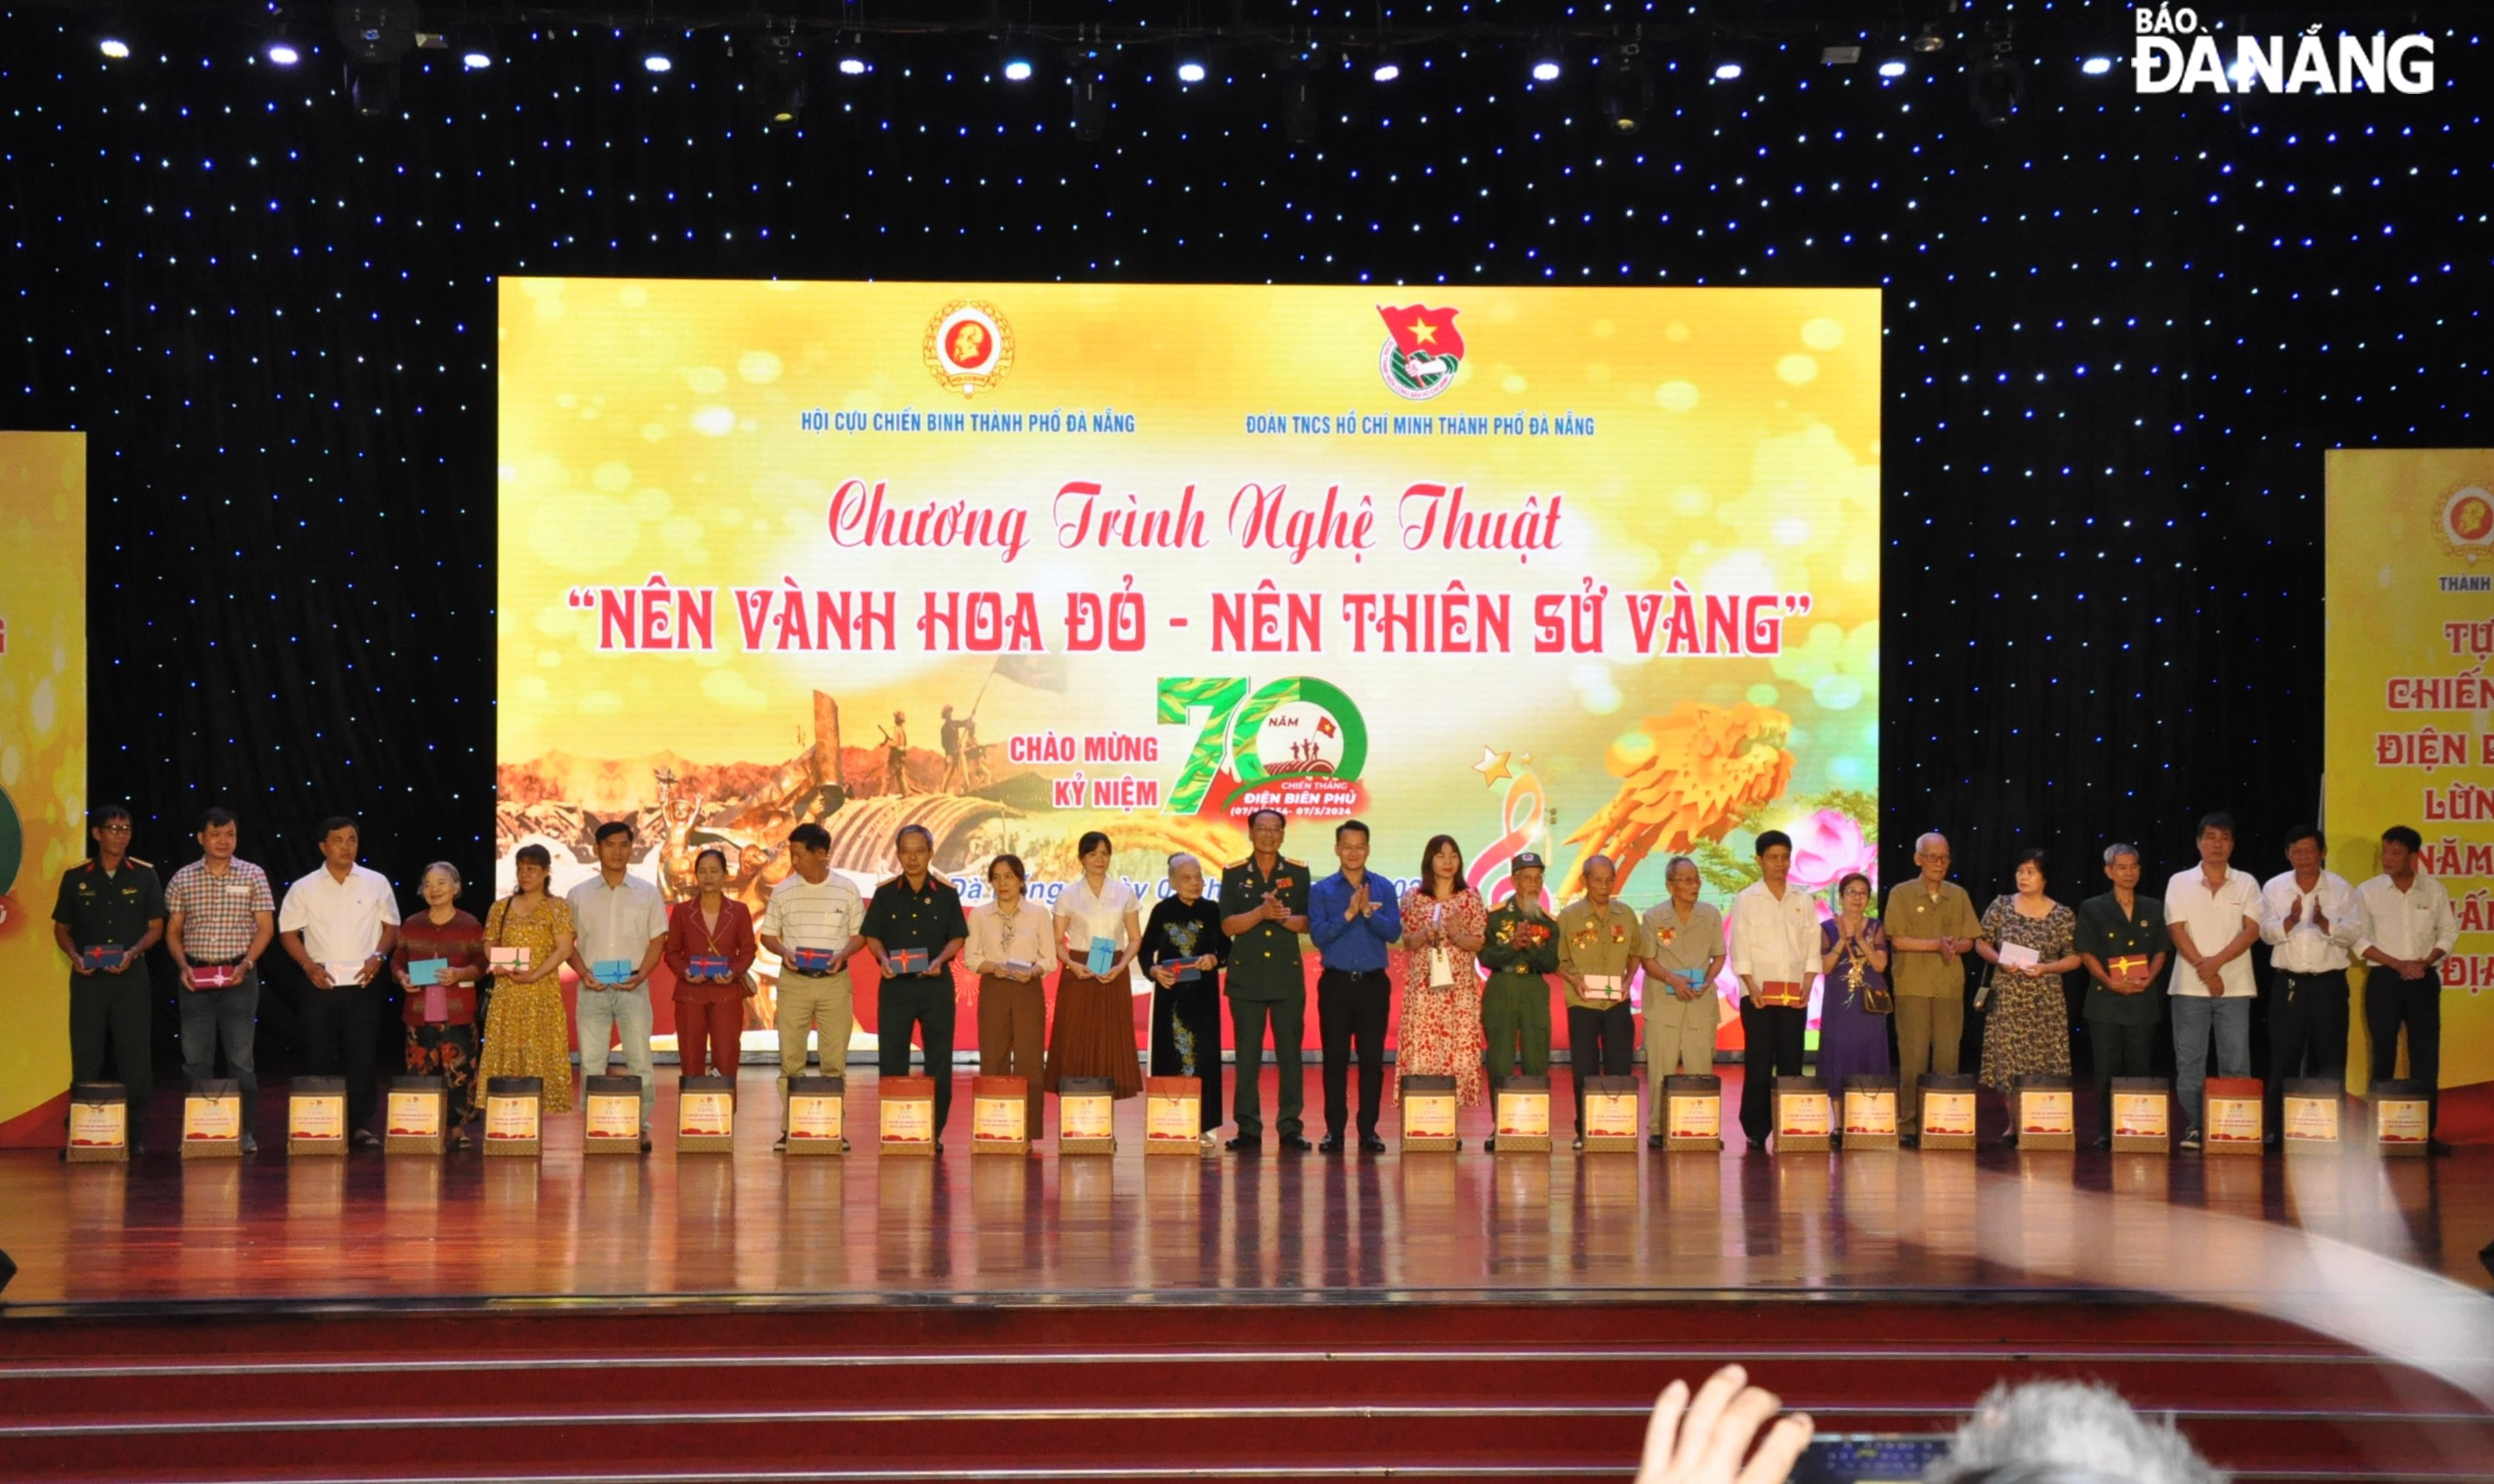 Ban tổ chức trao tặng quà cho thân nhân 24 cựu chiến binh, cựu thanh niên xung phong từng tham gia Chiến dịch Điện Biên Phủ đang sinh sống trên địa bàn thành phố